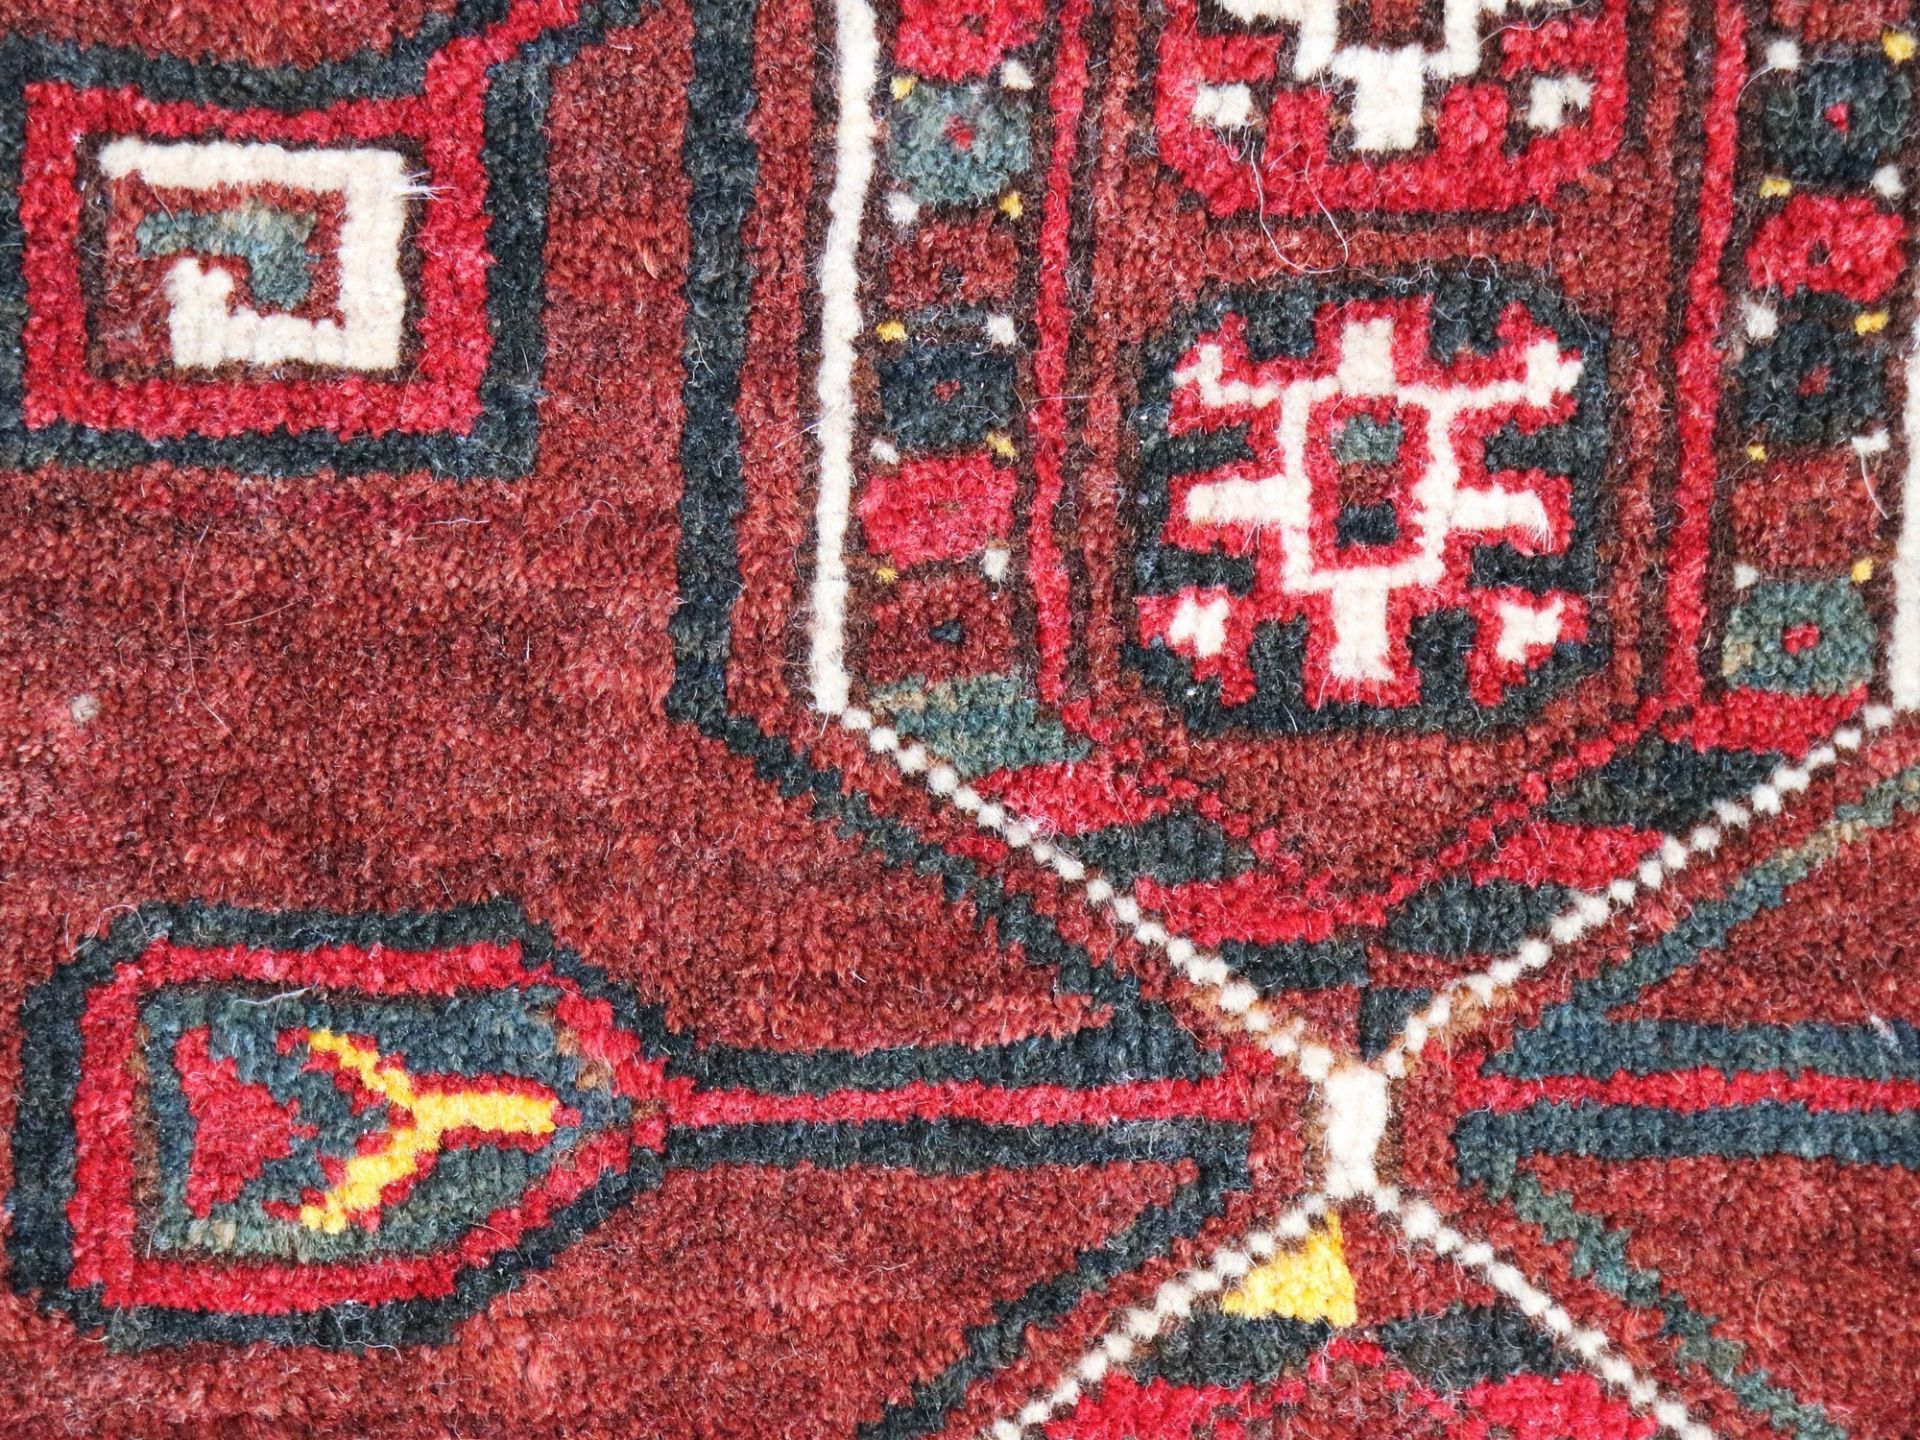 Satteltaschenfront Turkmenistan, Wolle, umgearbeitet, fortlaufendes Medaillonmotiv, rotgrundig, - Bild 4 aus 7